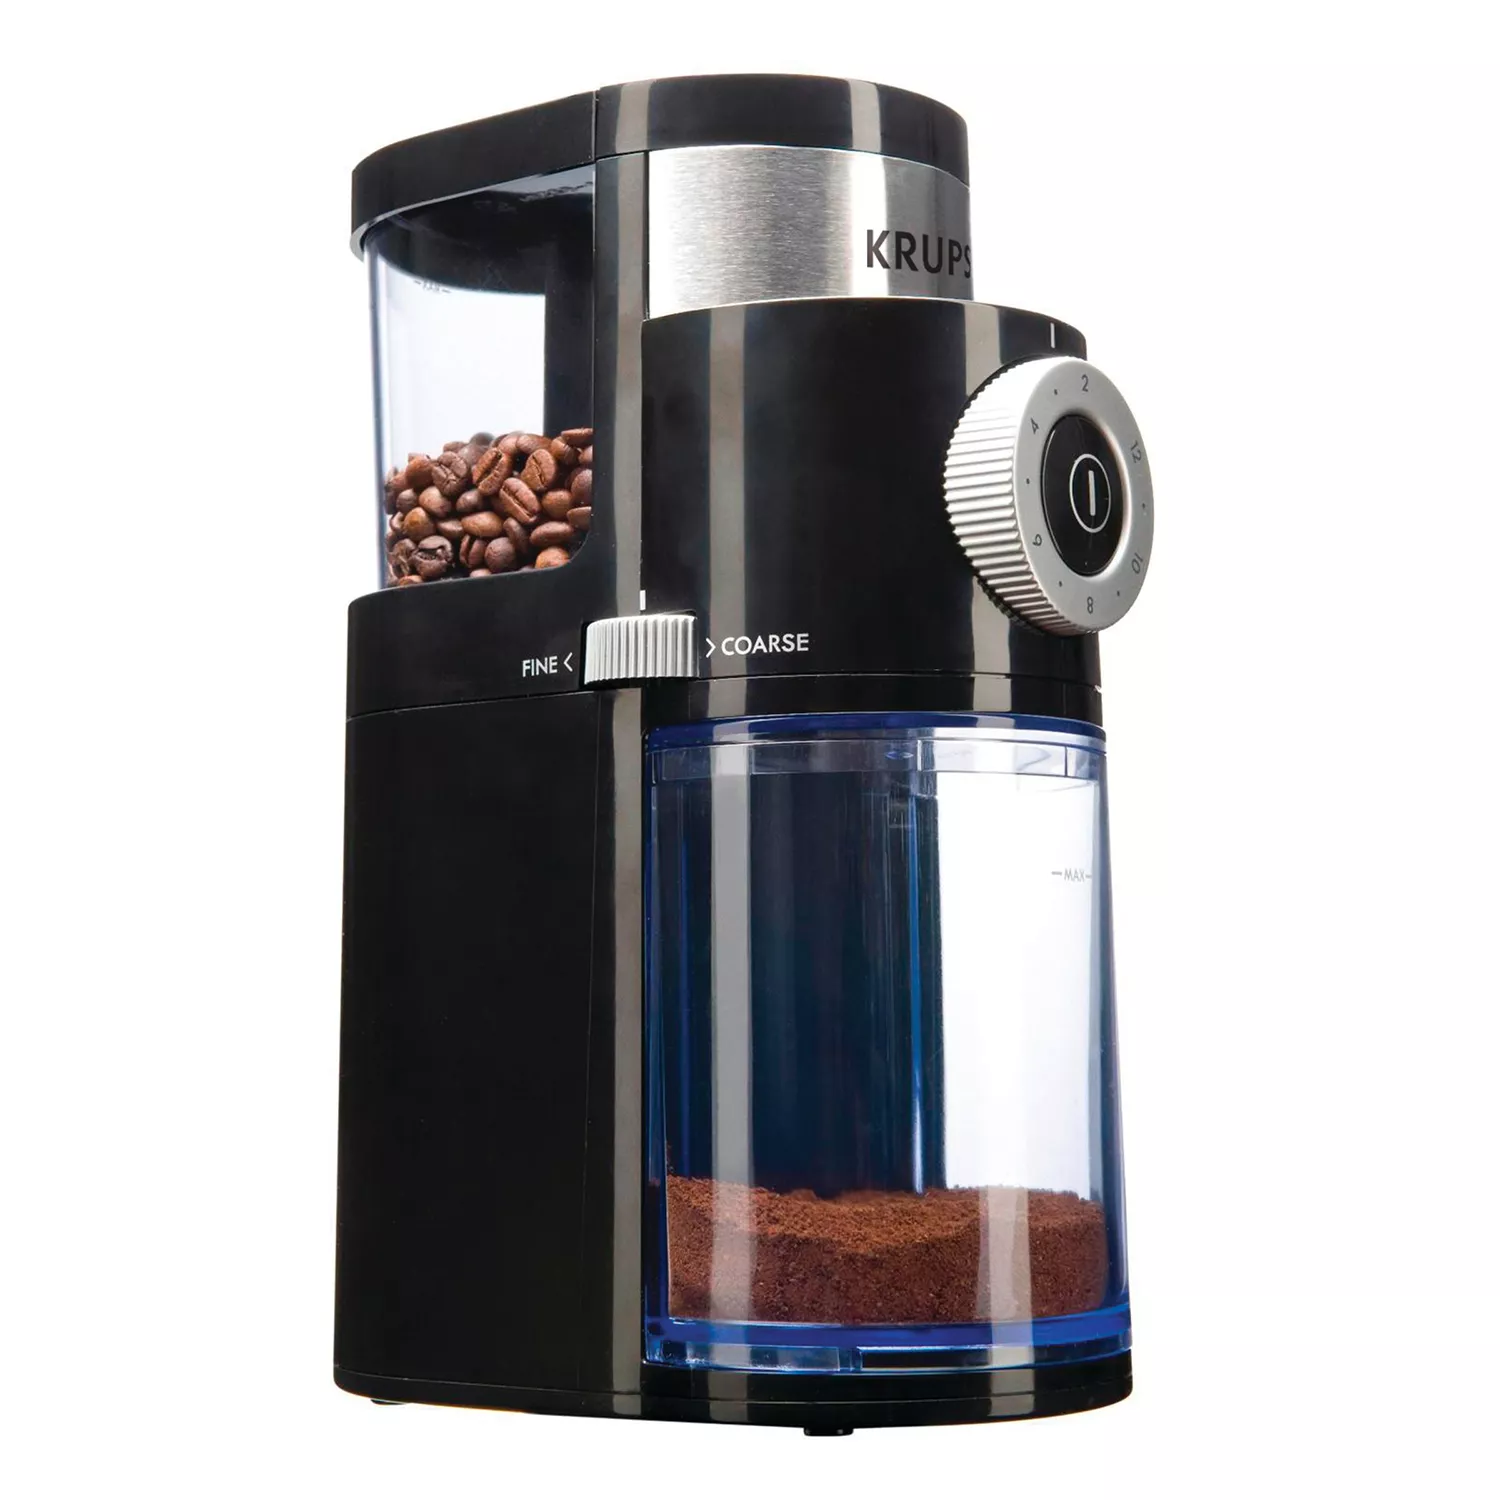 Krups GX550850 Burr Coffee Grinder - Black Works